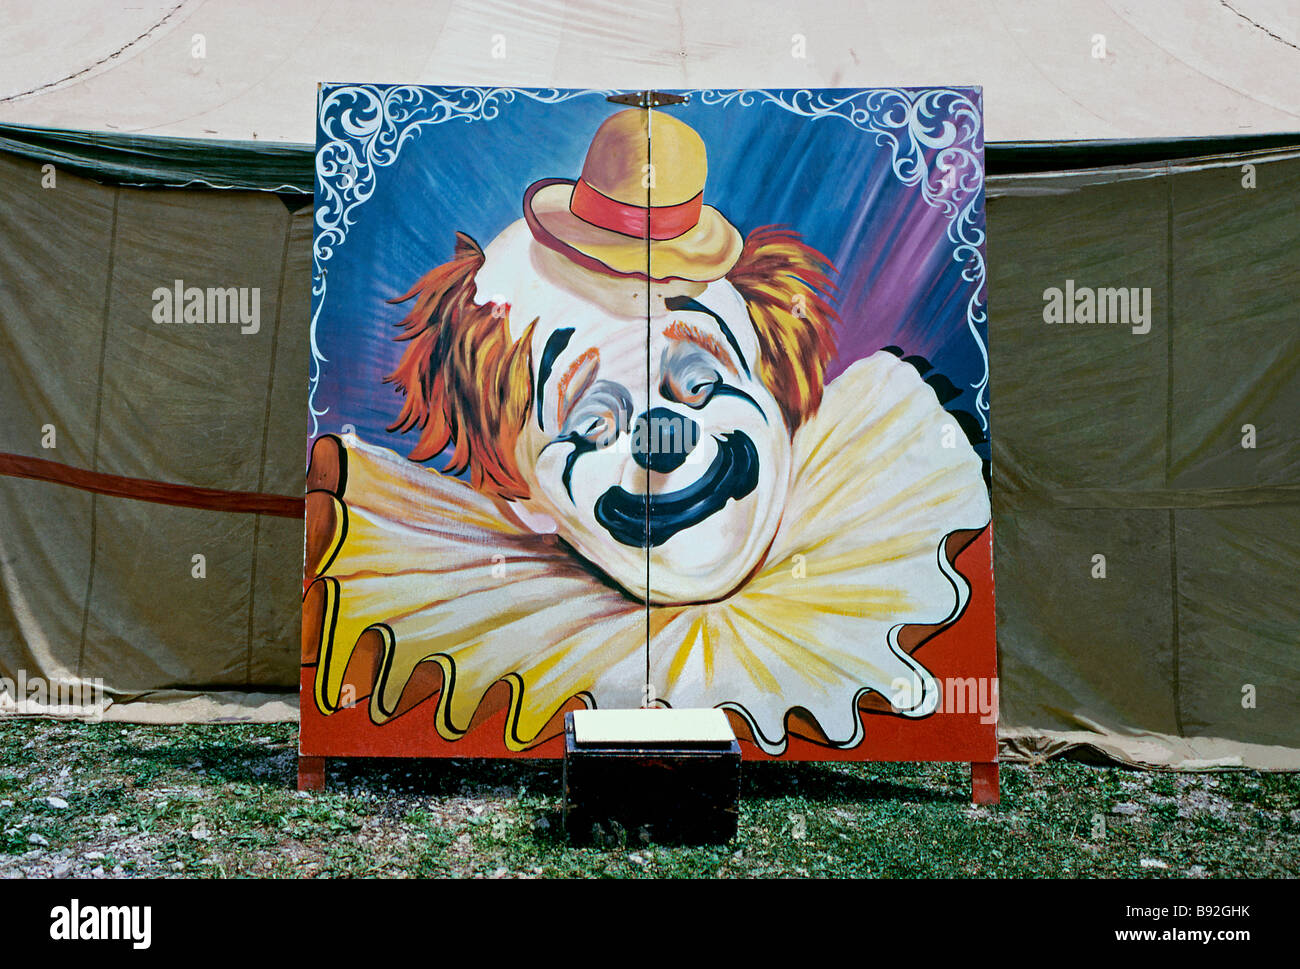 Peinture d'un visage de clown sur un panneau publicitaire en face de la grande haut, USA, c.1960 Banque D'Images